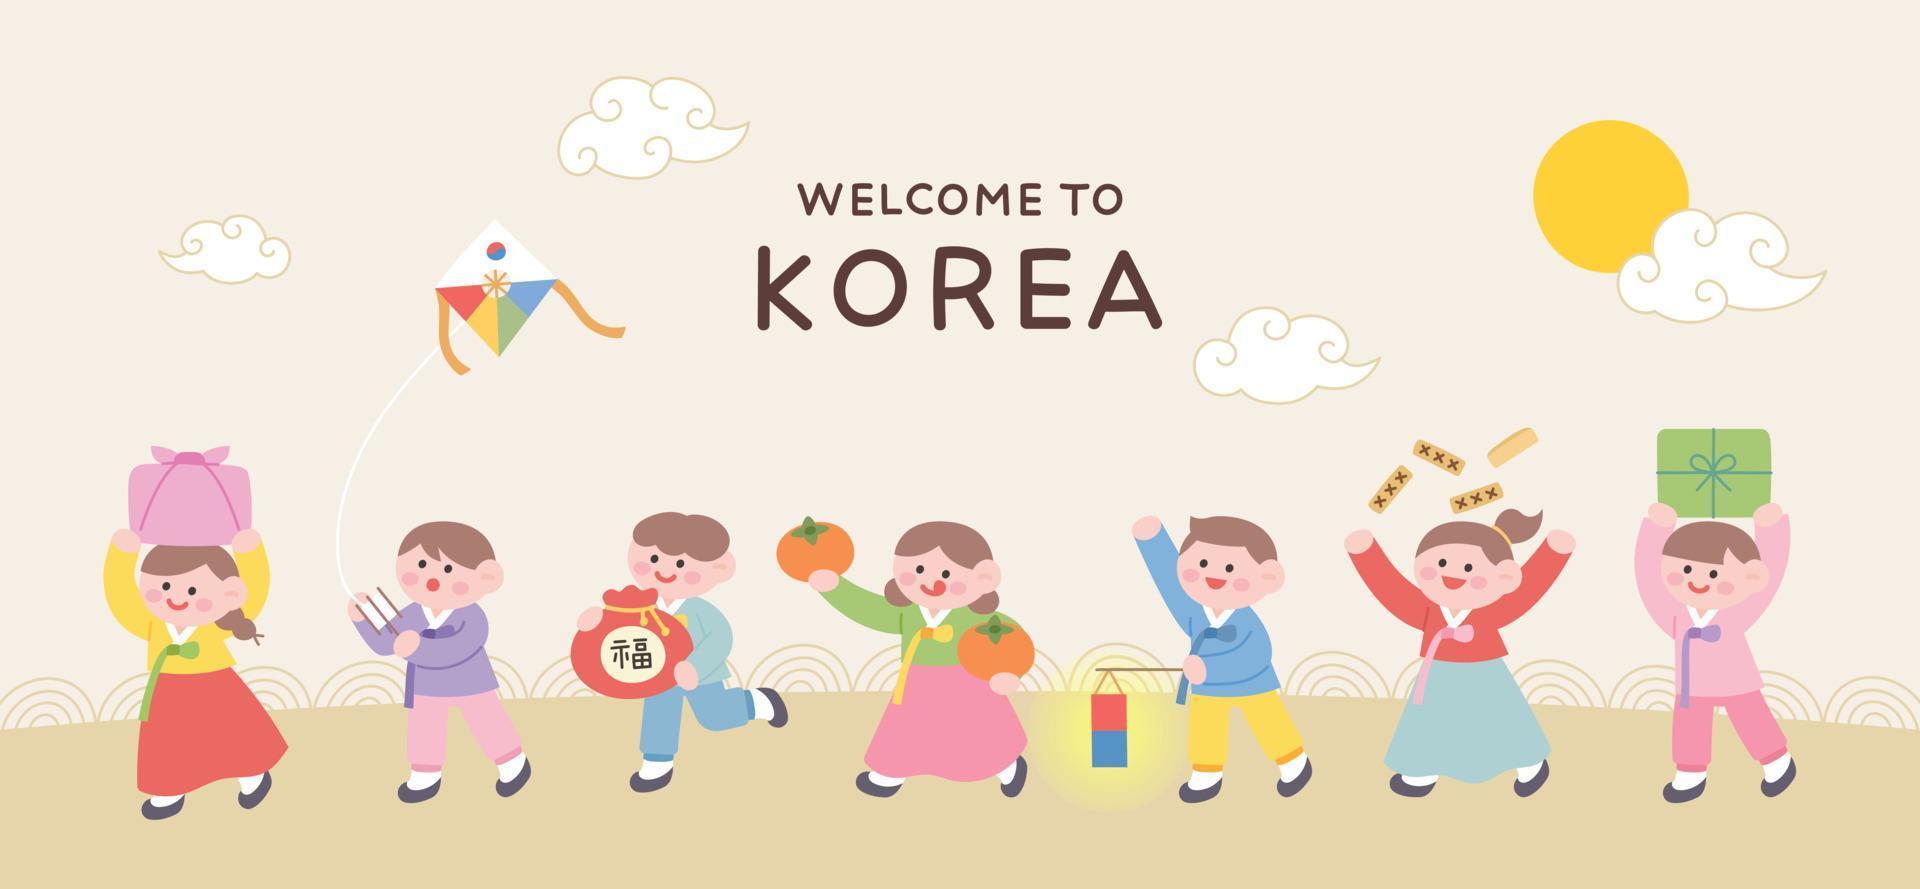 banner de bienvenida para visitar corea. lindos niños con traje tradicional coreano hanbok caminan lado a lado con regalos y juguetes tradicionales. vector